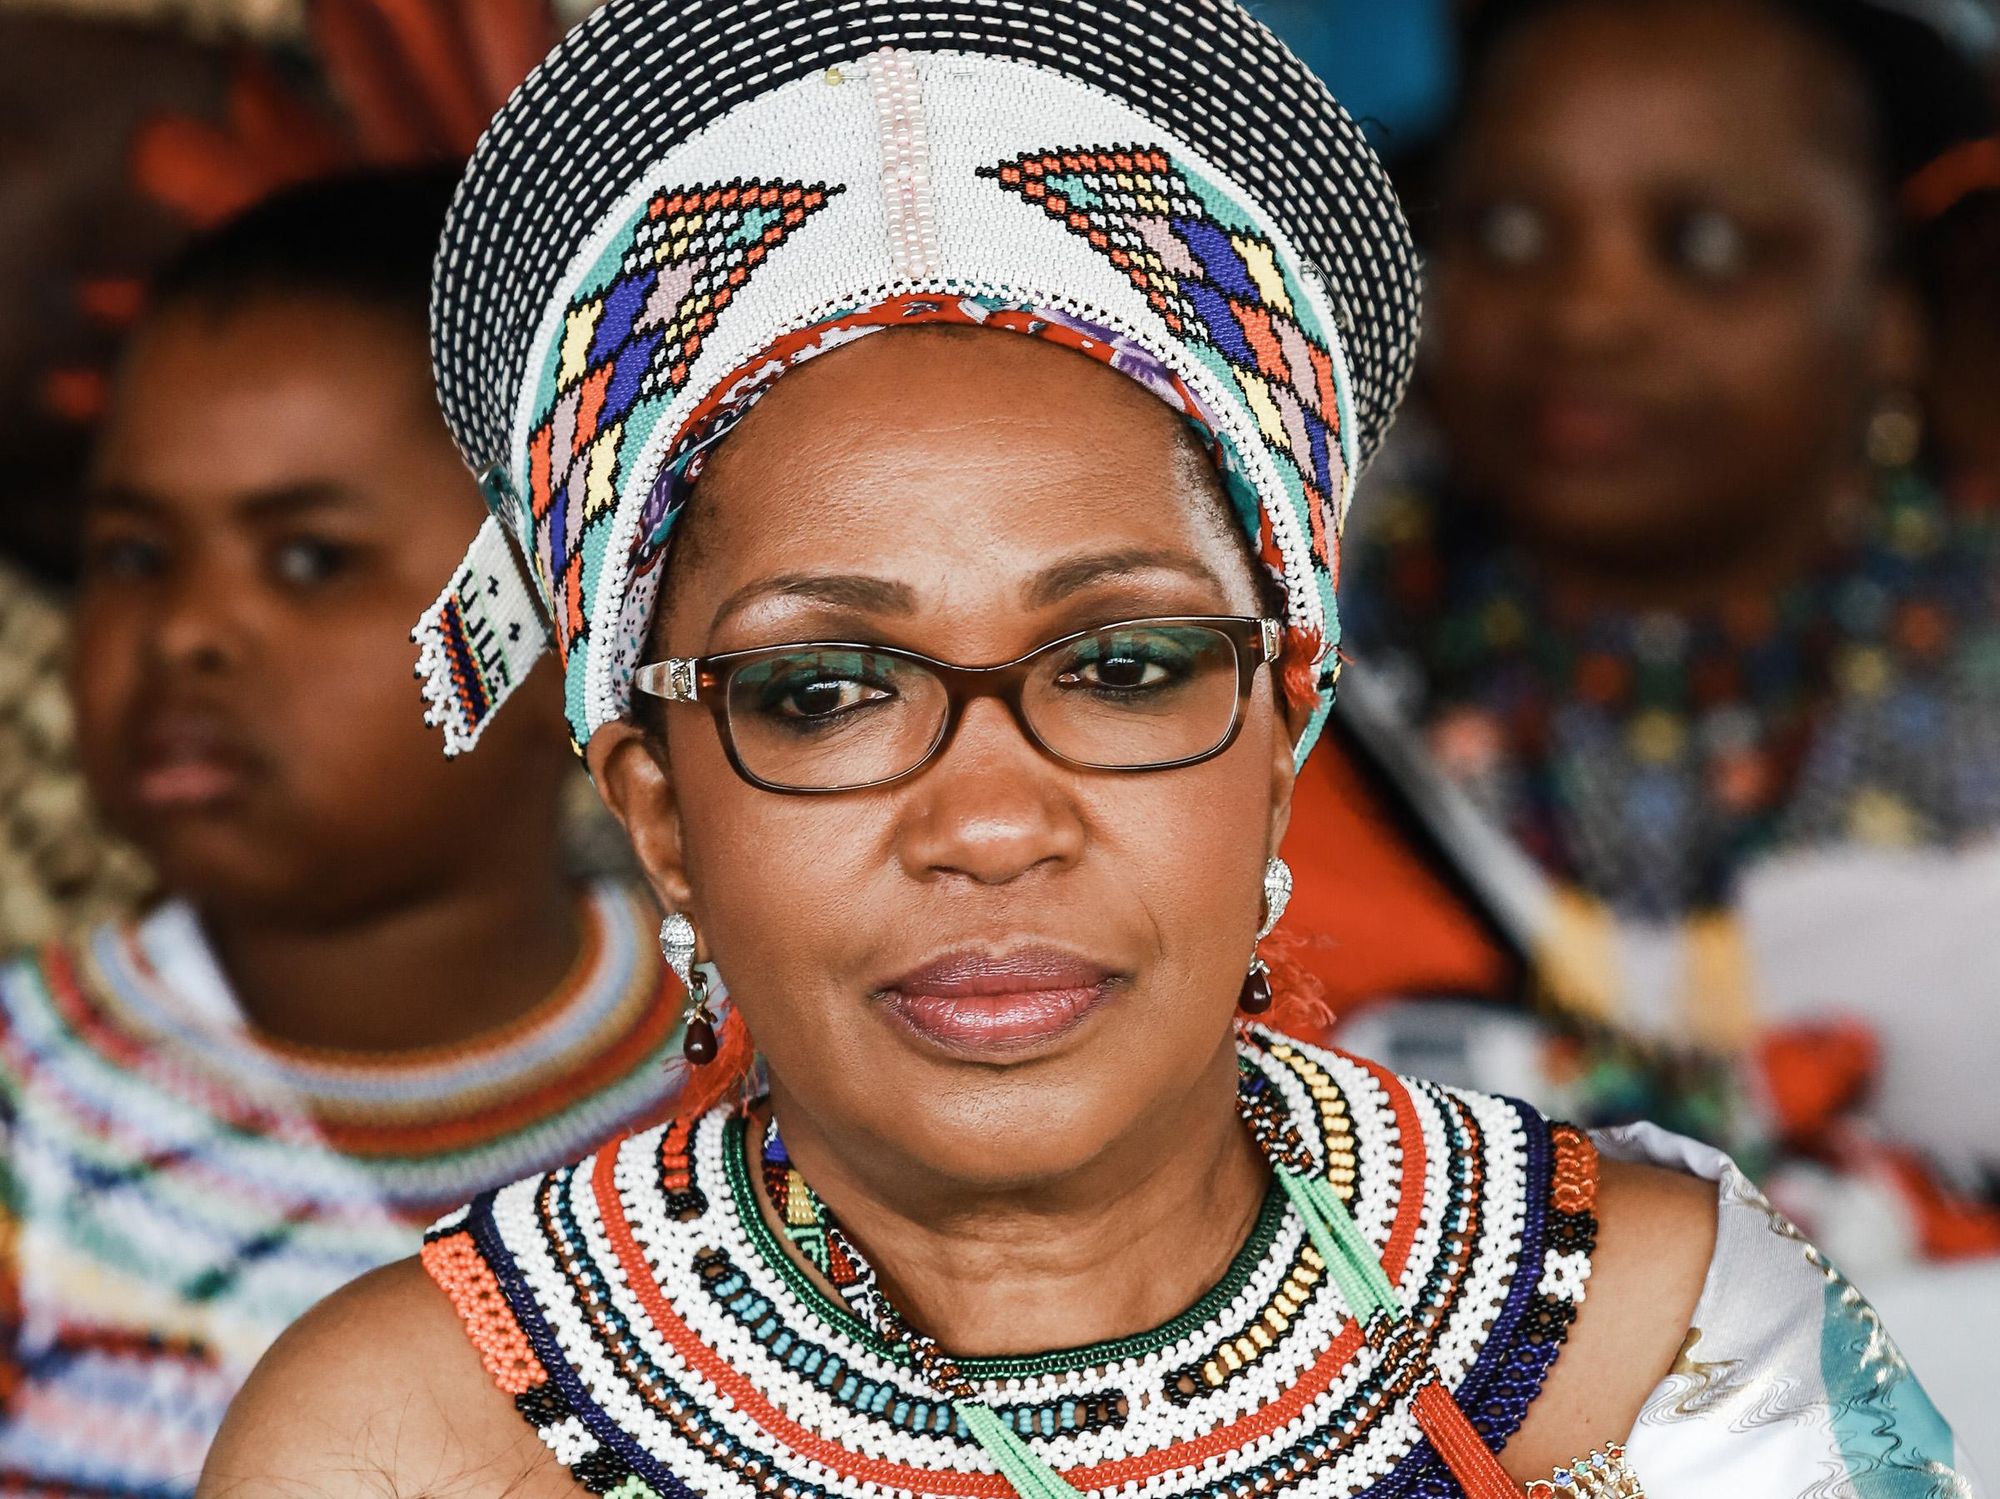 The late Zulu Queen Mantfombi Dlamini Zulu in traditional Zulu regalia